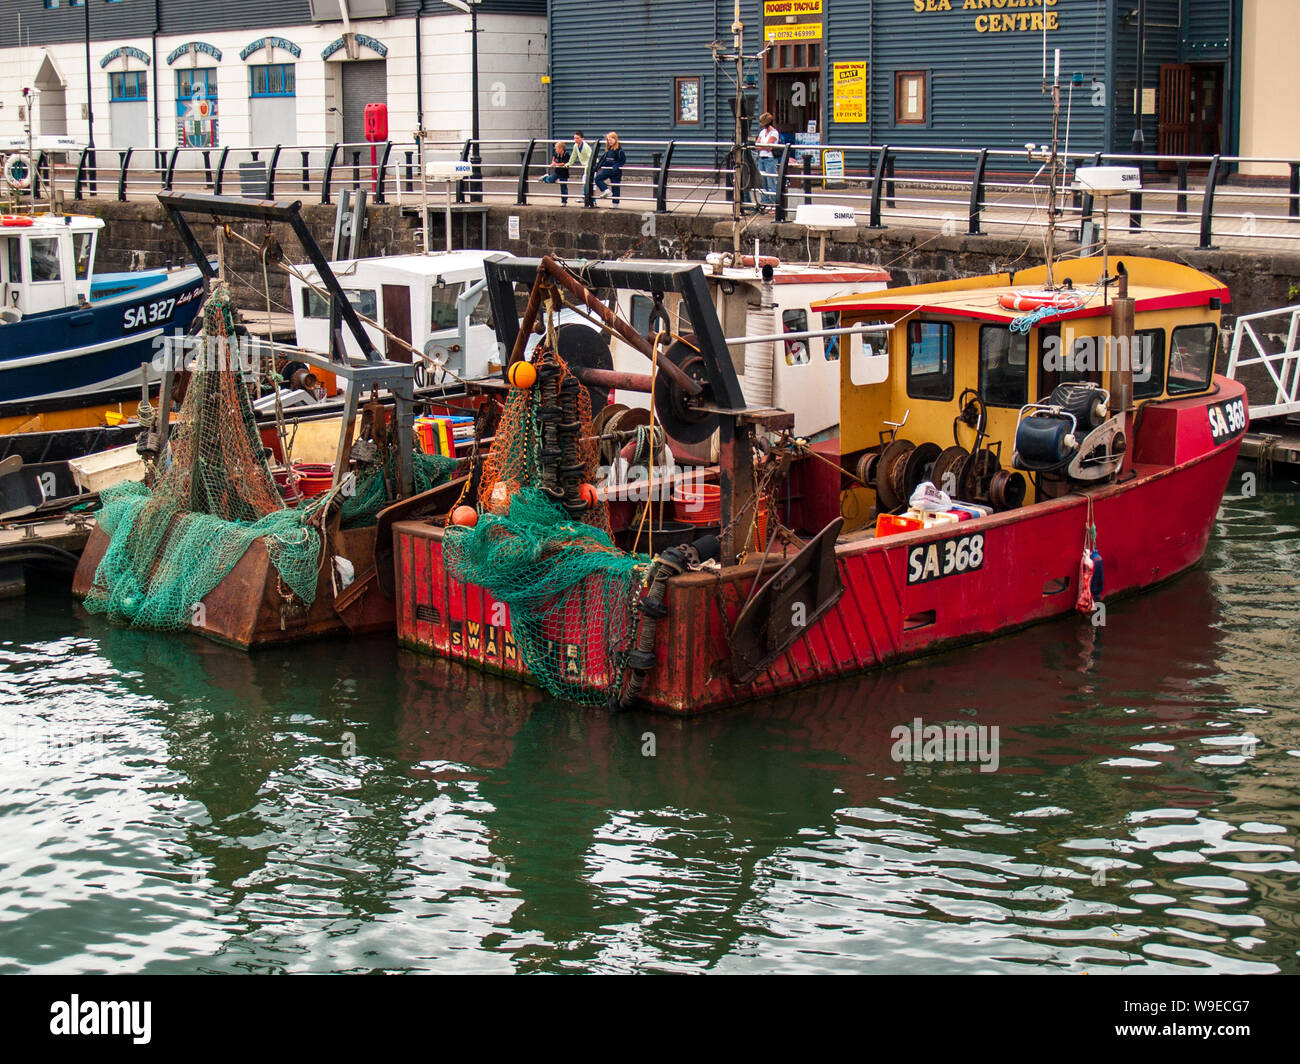 Port de plaisance de Swansea. Les bateaux de pêche sont amarrés au quai. L'équipement de pêche et les filets peuvent être vus sur les bateaux. Pays de Galles, Royaume-Uni. Banque D'Images